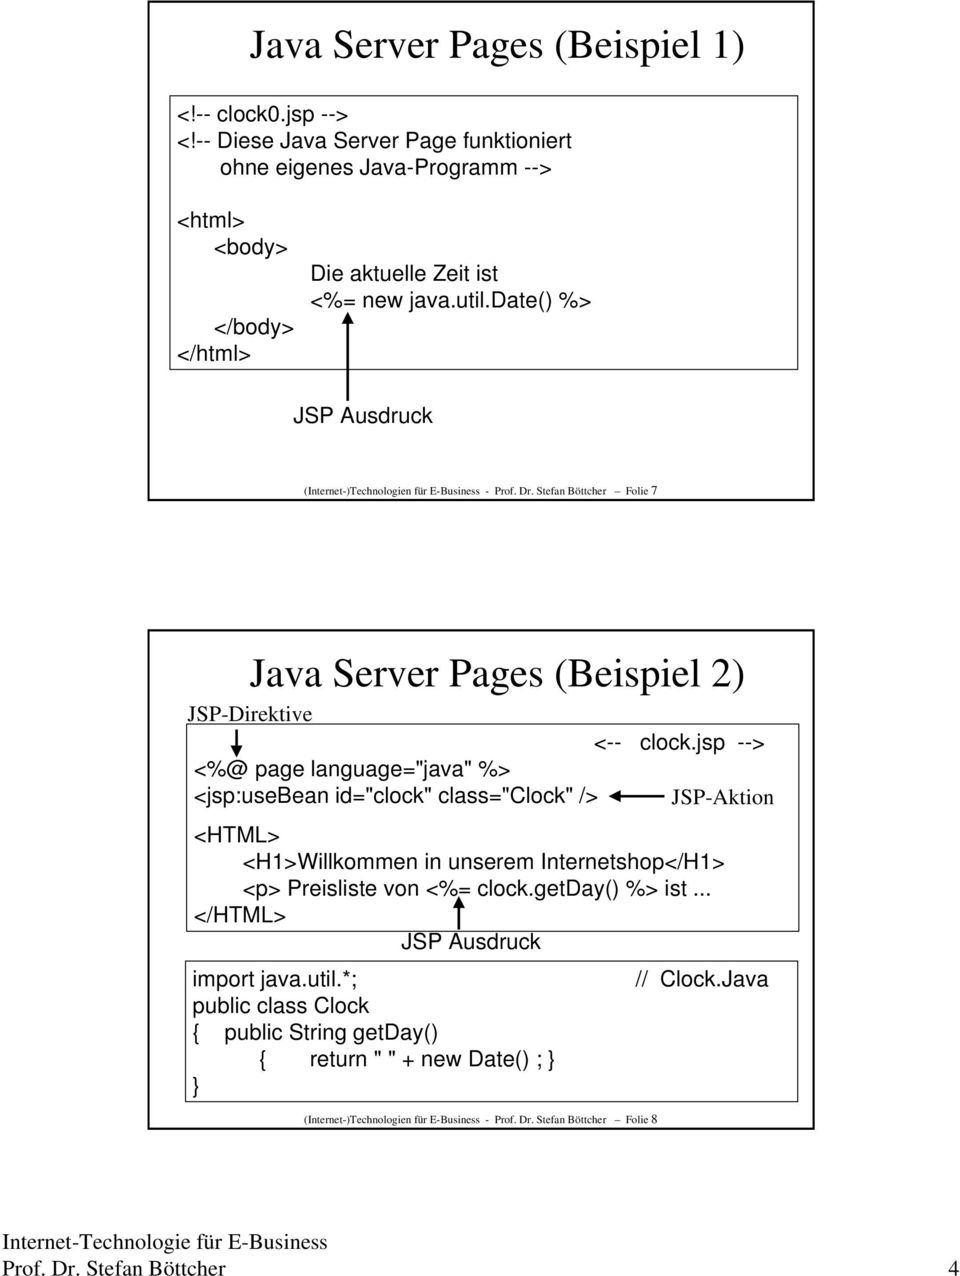 jsp --> <%@ page language="java" %> <jsp:usebean id="clock" class="clock" /> JSP-Aktion <HTML> <H1>Willkommen in unserem Internetshop</H1> <p> Preisliste von <%= clock.getday() %> ist.